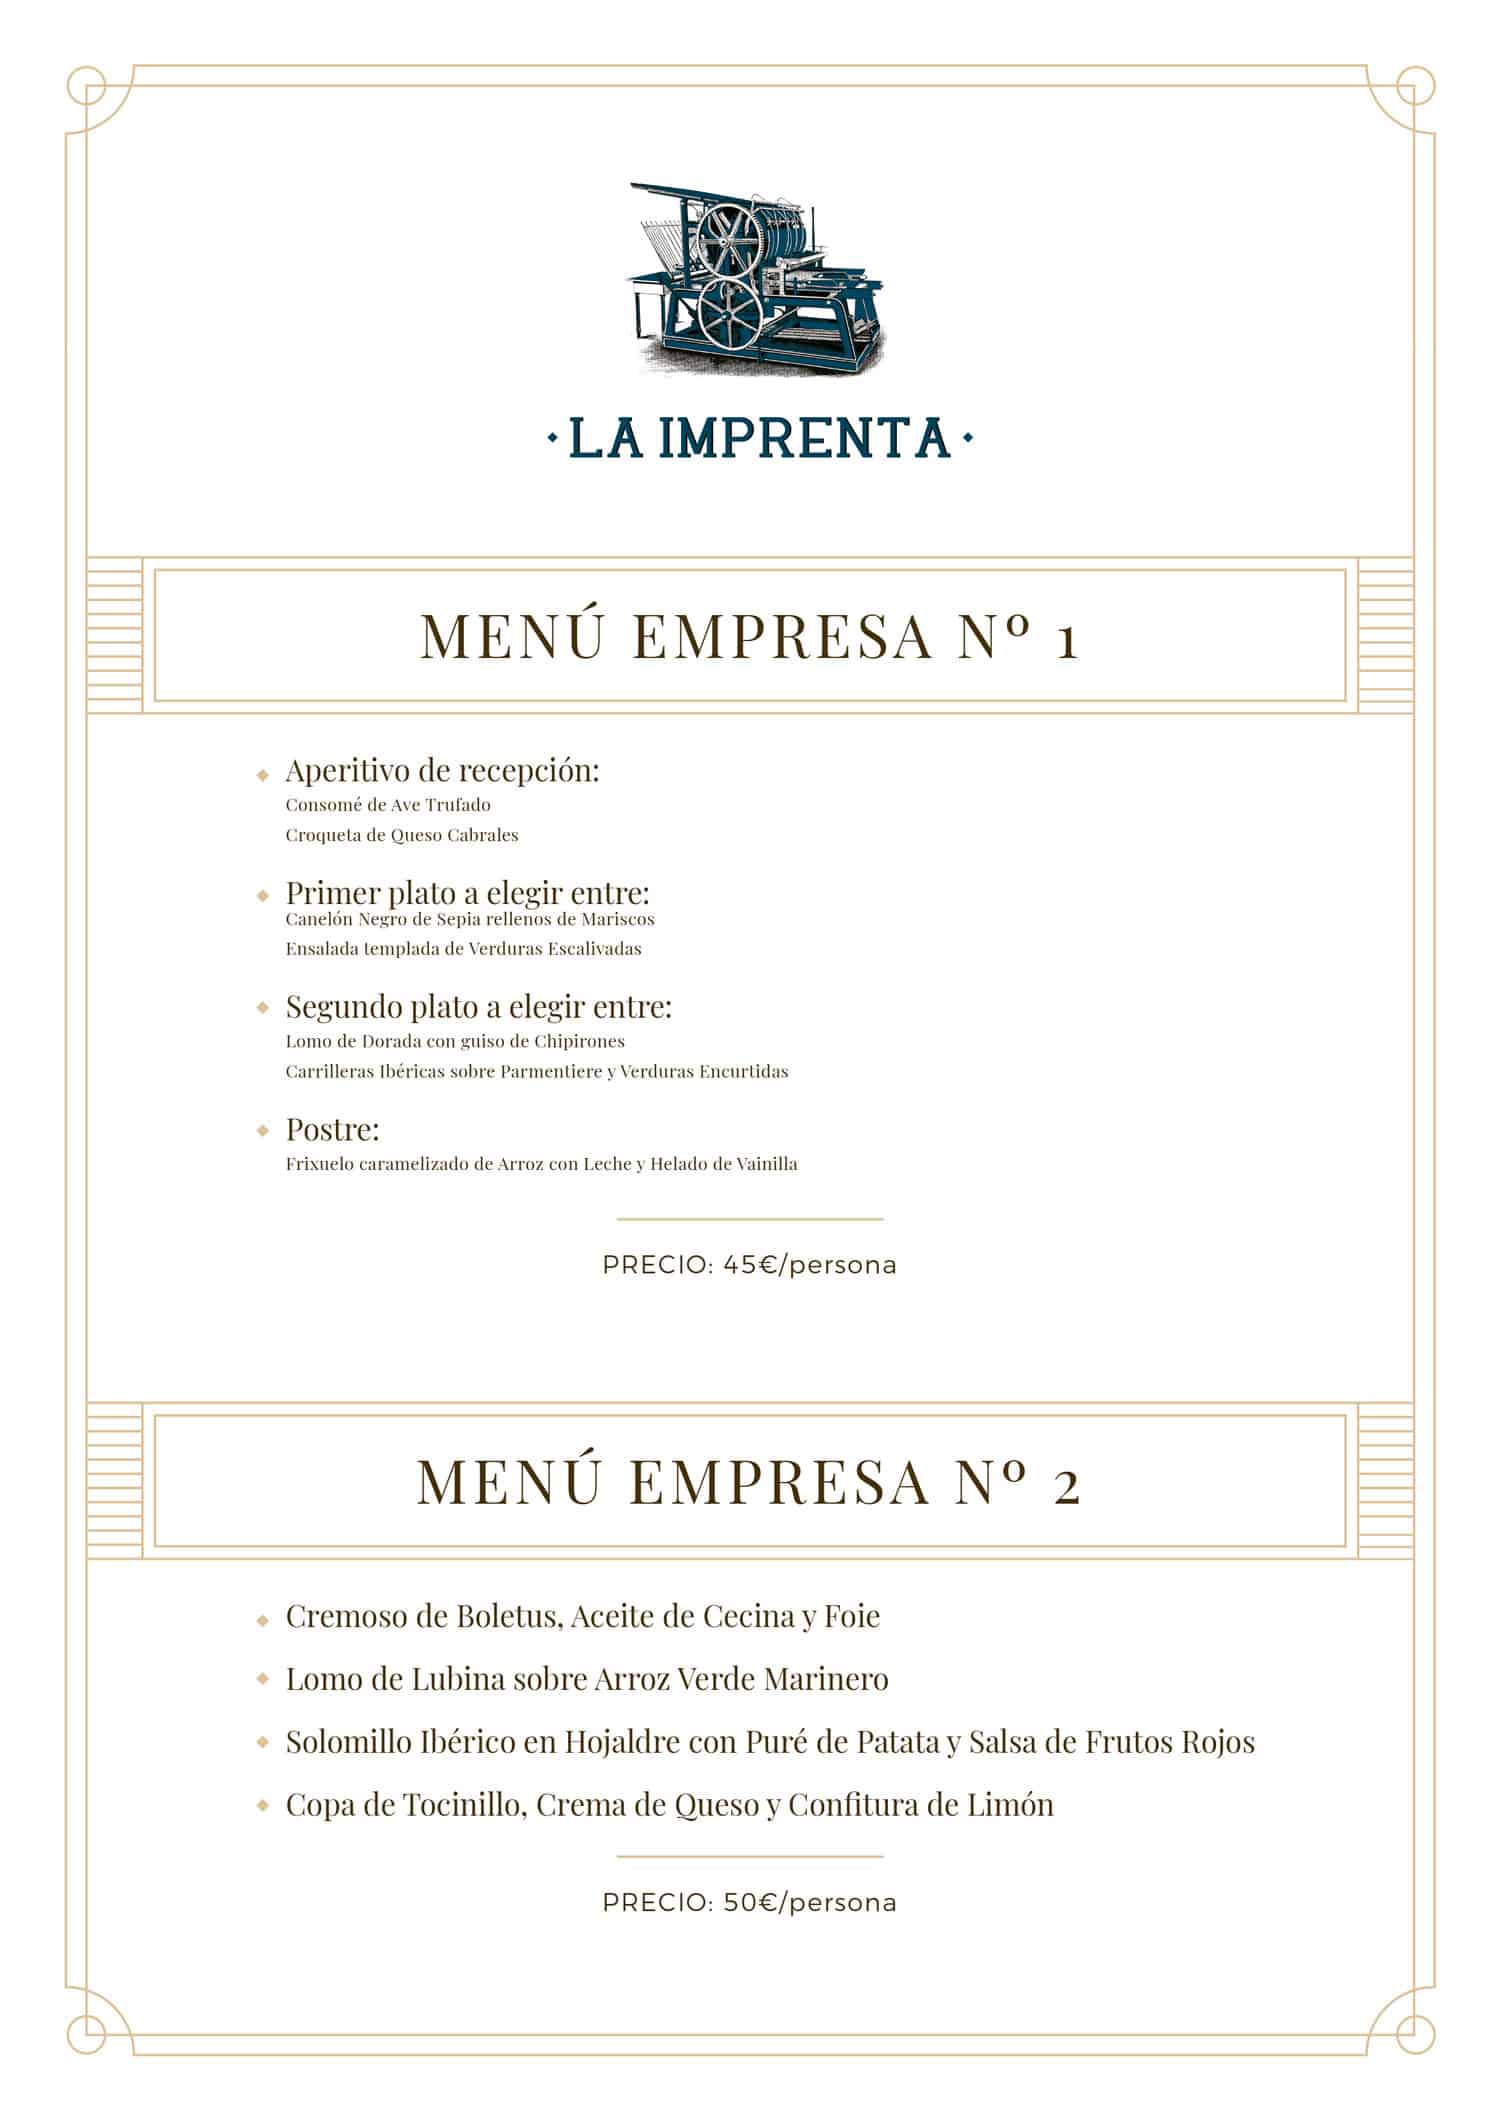 the-printing-ibiza-menus-dinner-company-weihnachten-2021-welcometoibiza